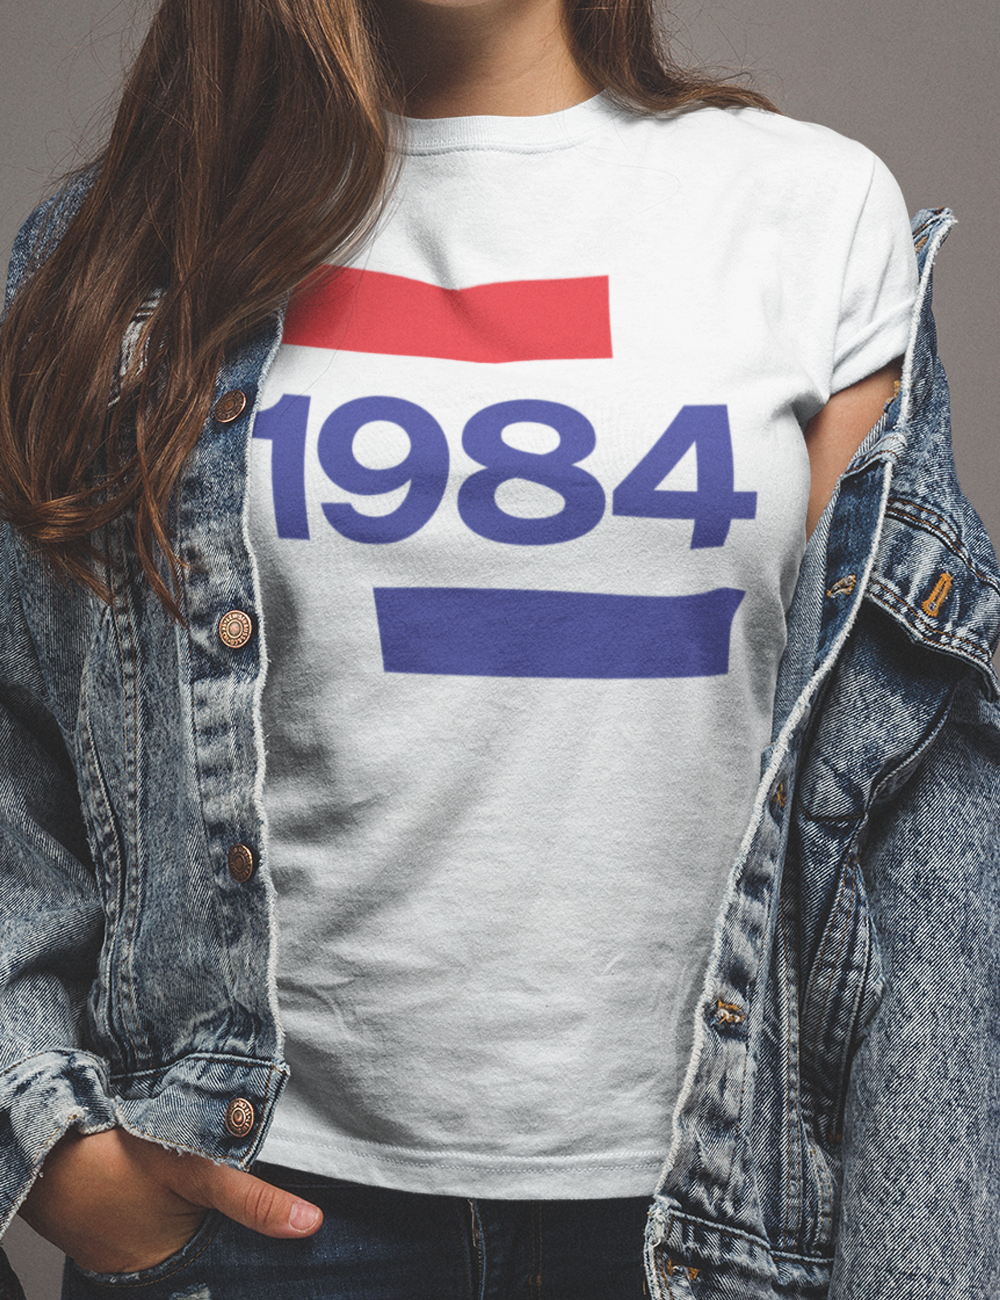 1984 Going Dutch Women's Softstyle Tee - TalkPeng